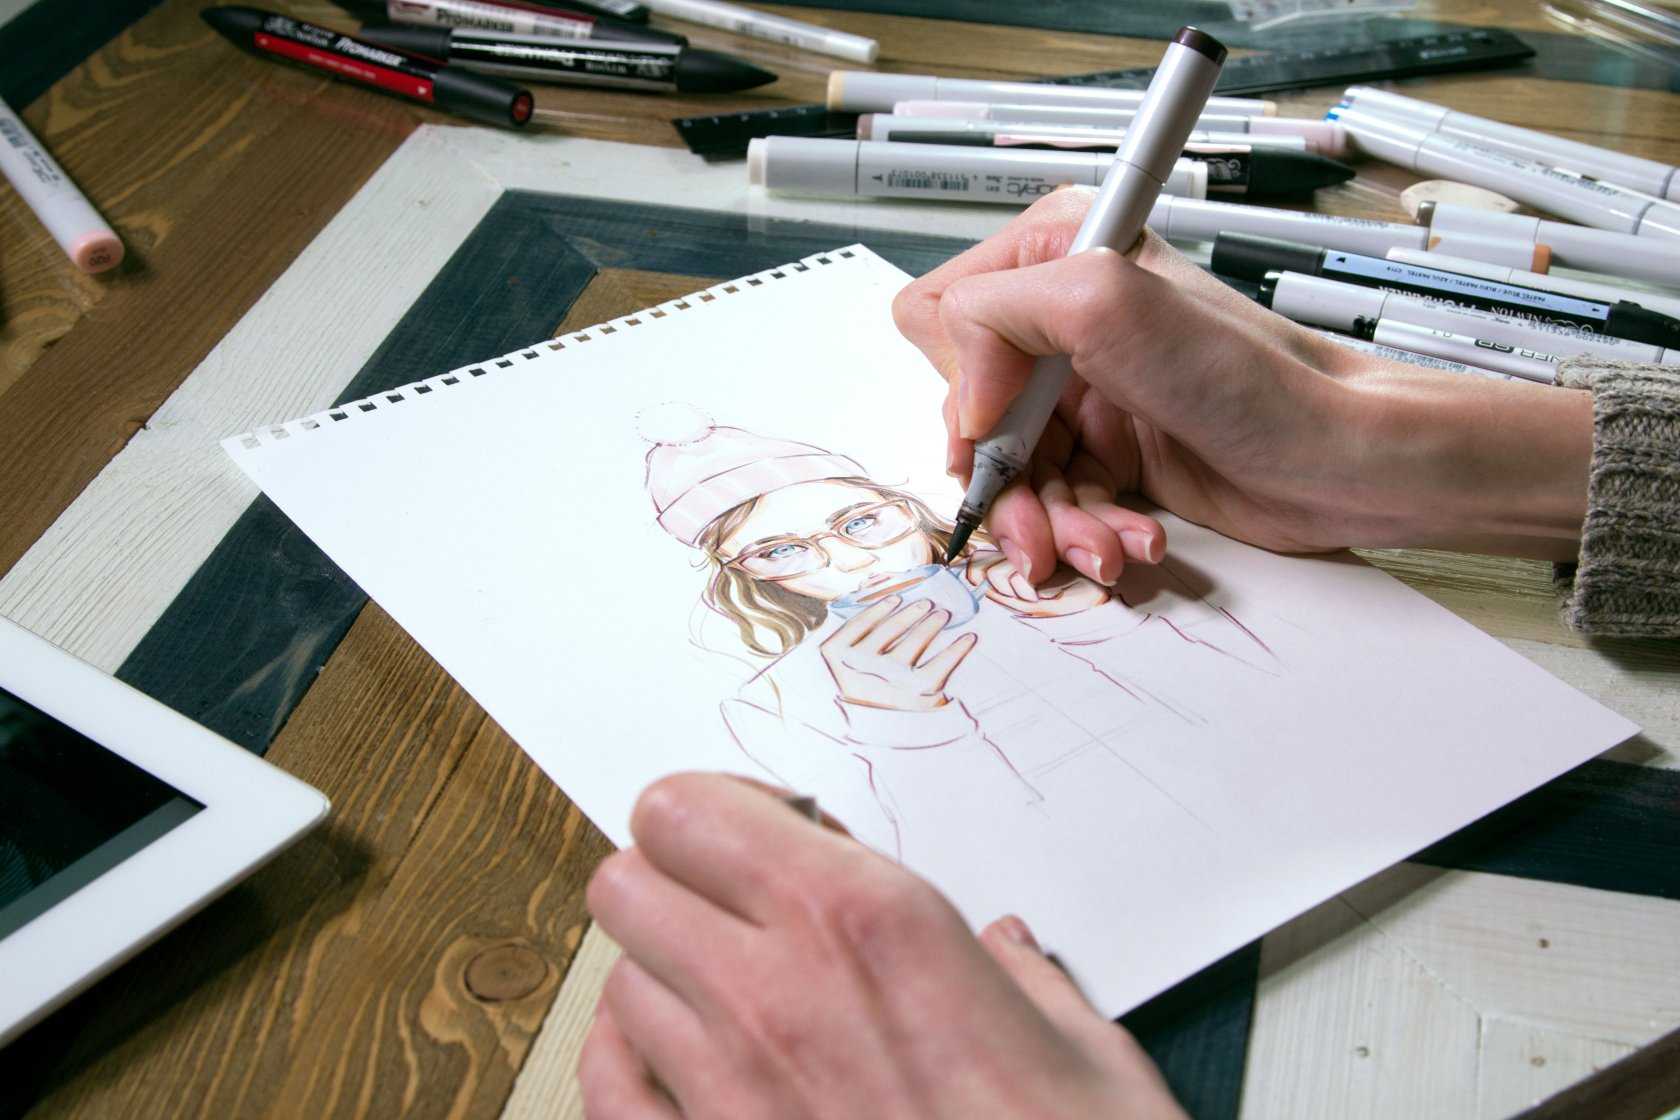 Хотите узнать, как рисовать карандашом начинающему художнику Гадайте, как рисовать карандашом крутые скетчи и целые картины, но не разбираетесь даже в видах карандашей Мы расскажем, как научиться рисовать карандашом поэтапно